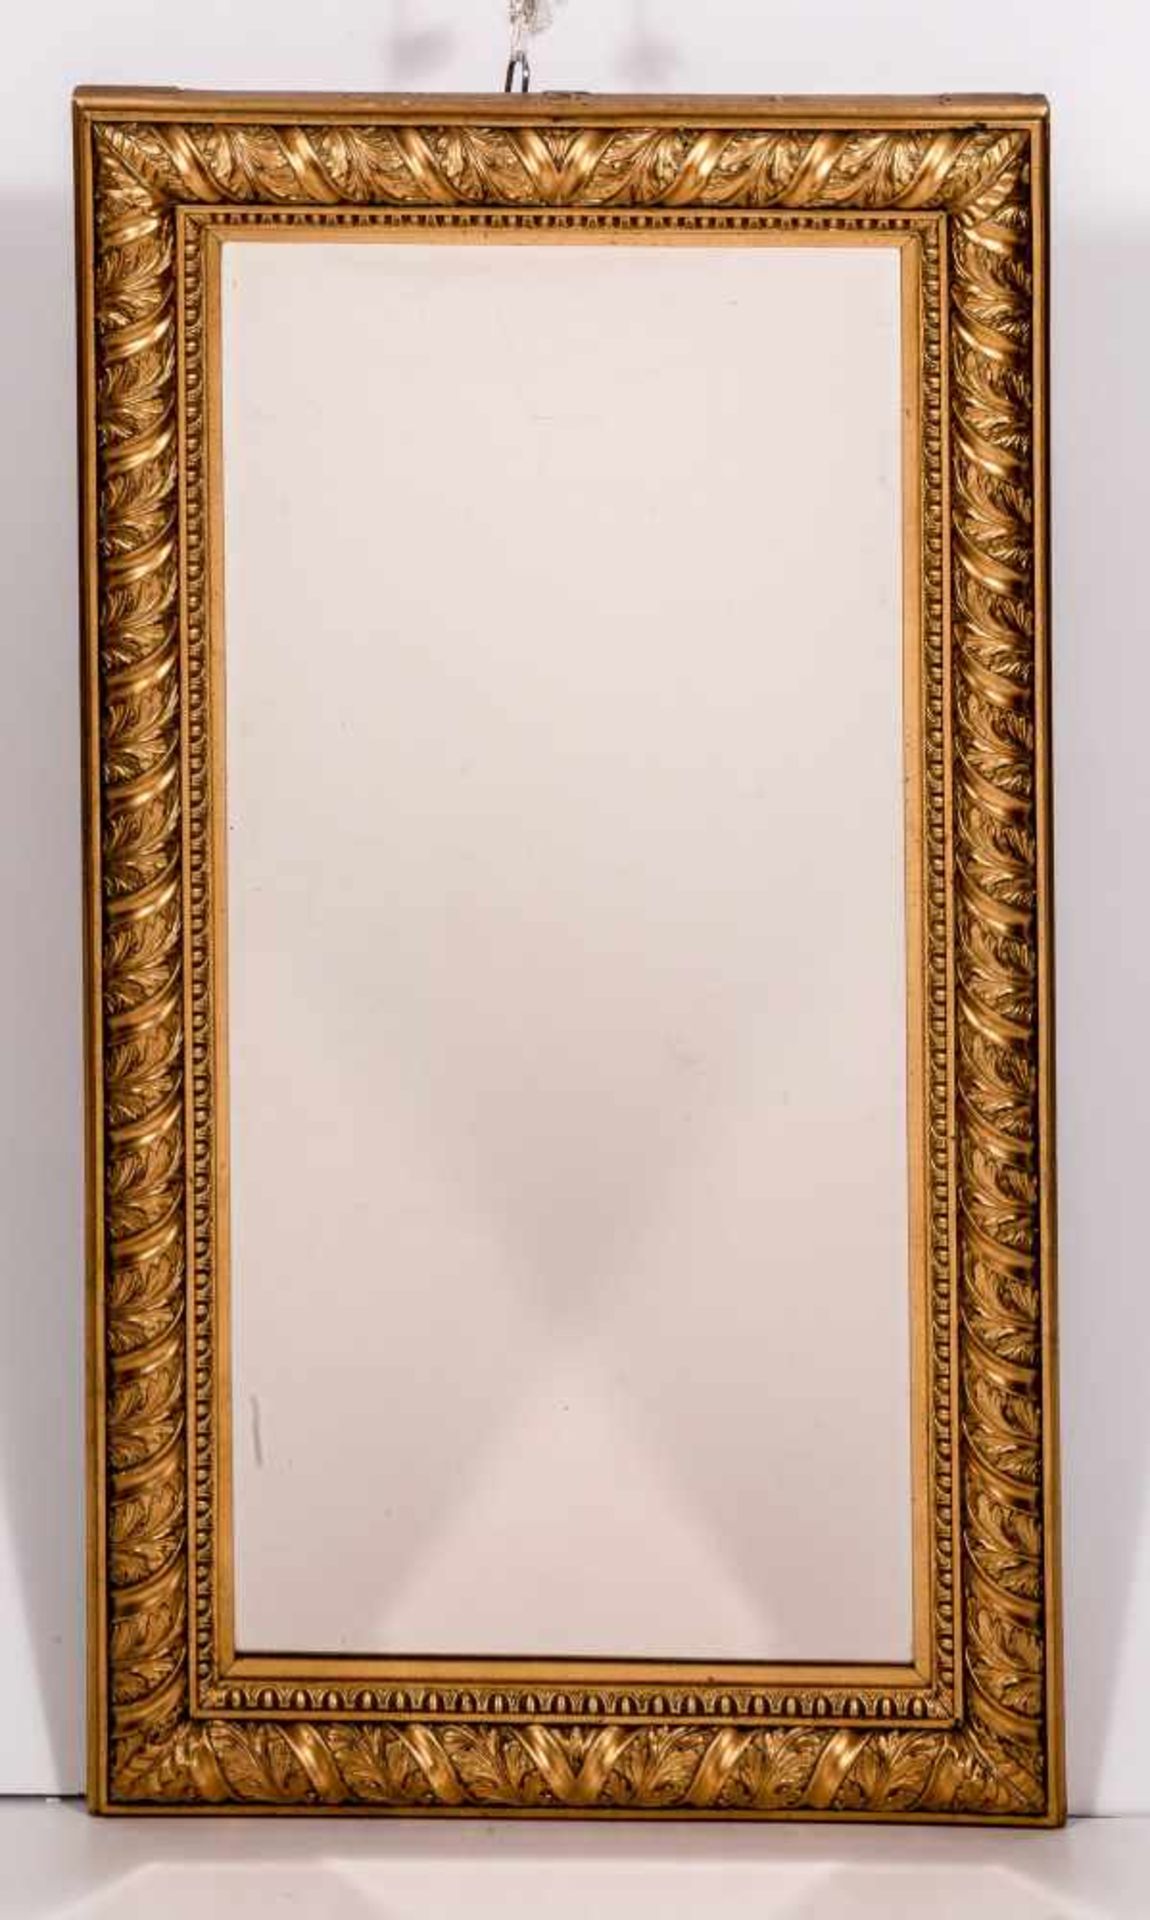 Rahmenspiegel mit klassizistischem DekorHolz mit Stuckauflage, vergoldet. Gerundete Leiste mit